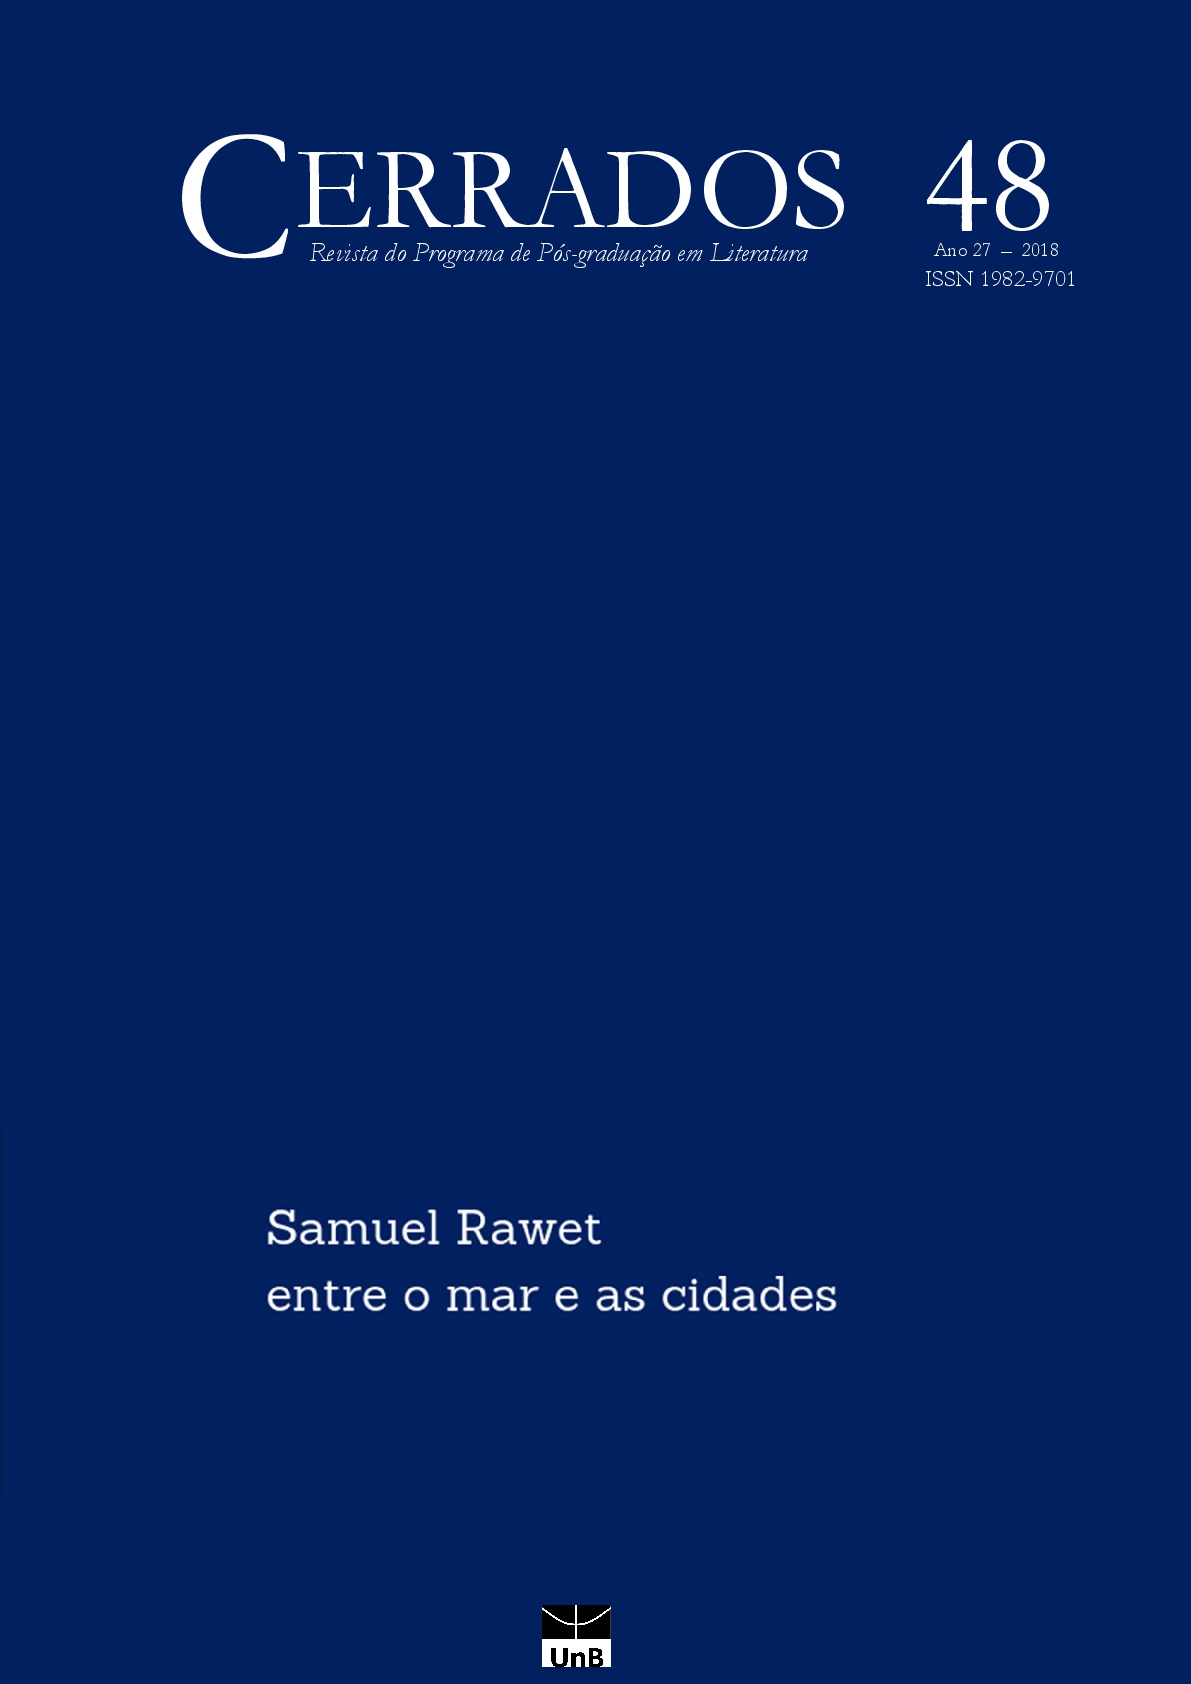 					Visualizar v. 27 n. 48 (2018): "Samuel Rawet - entre o mar e as cidades: trânsitos migratórios, culturais e identitários na obra do escritor"
				